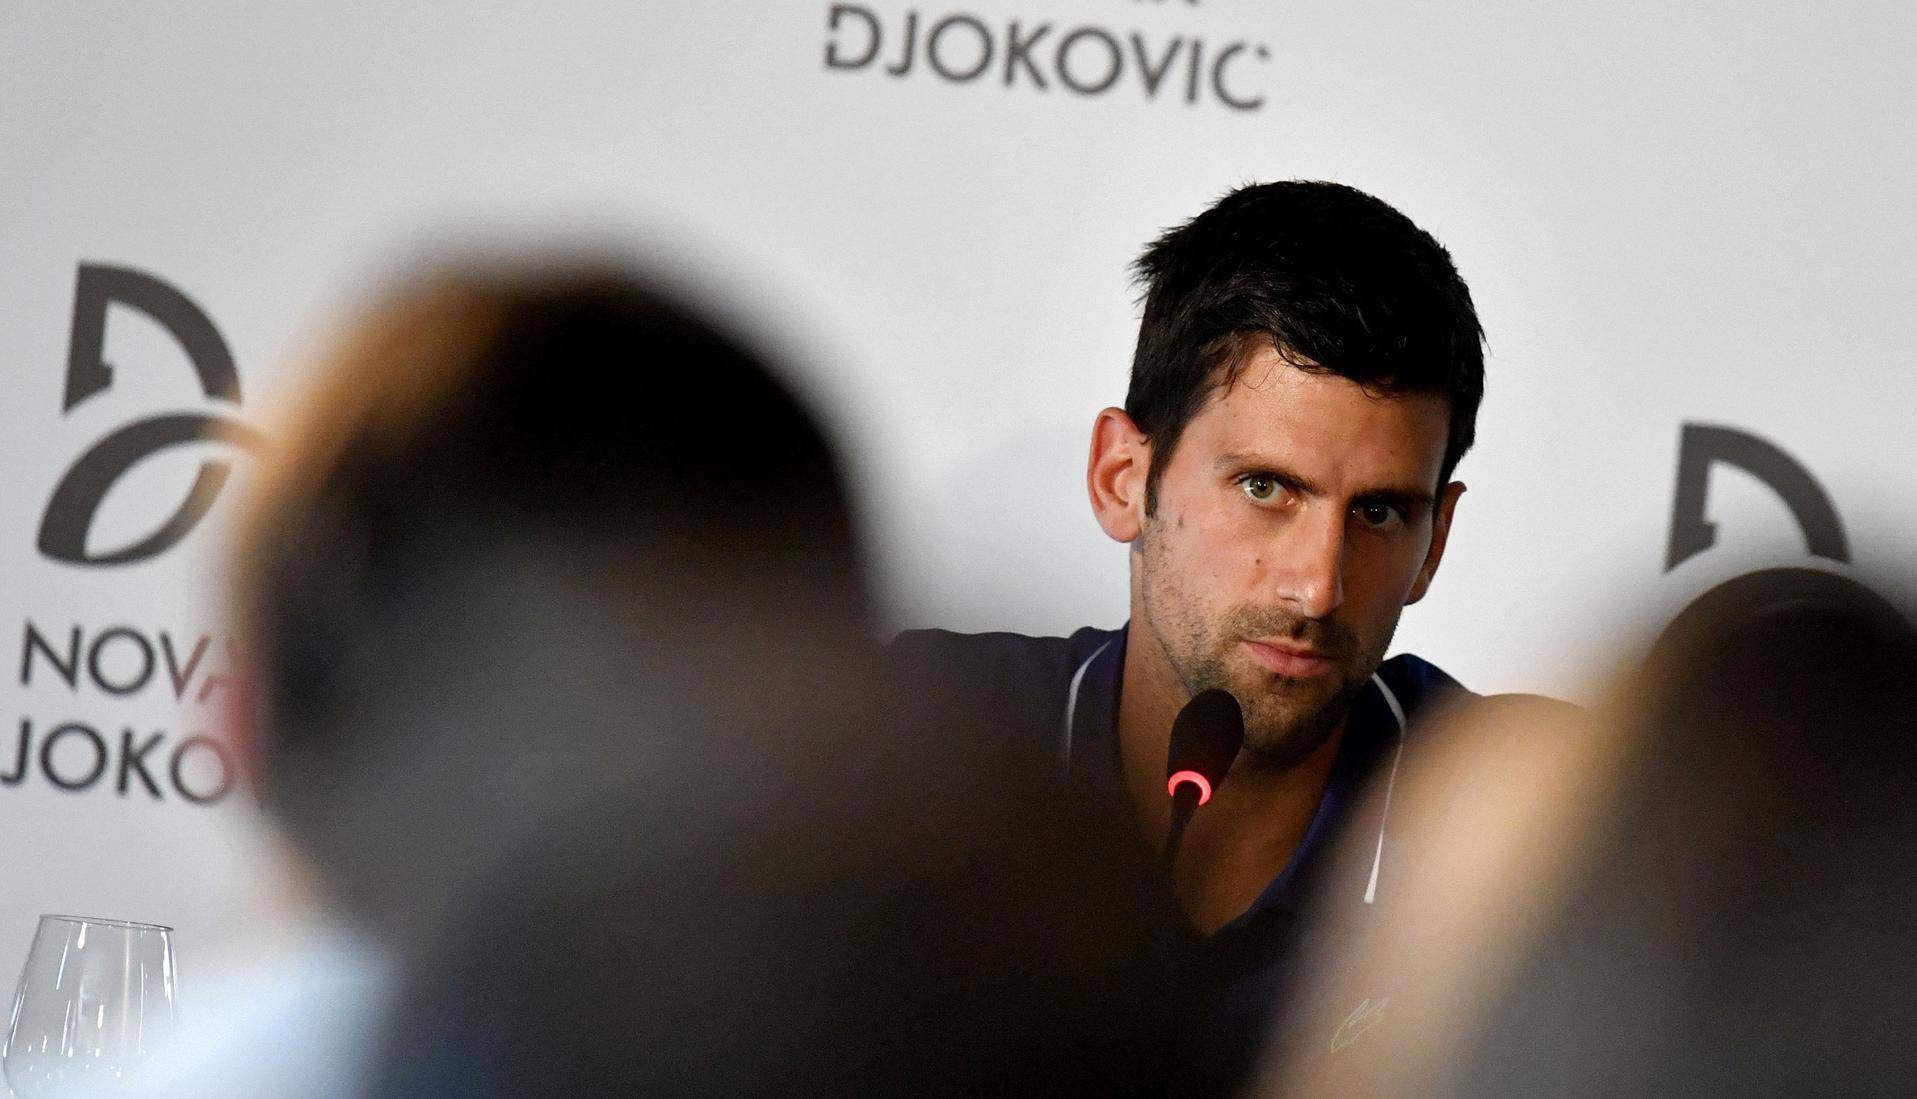 FILE PHOTO: Novak Djokovic